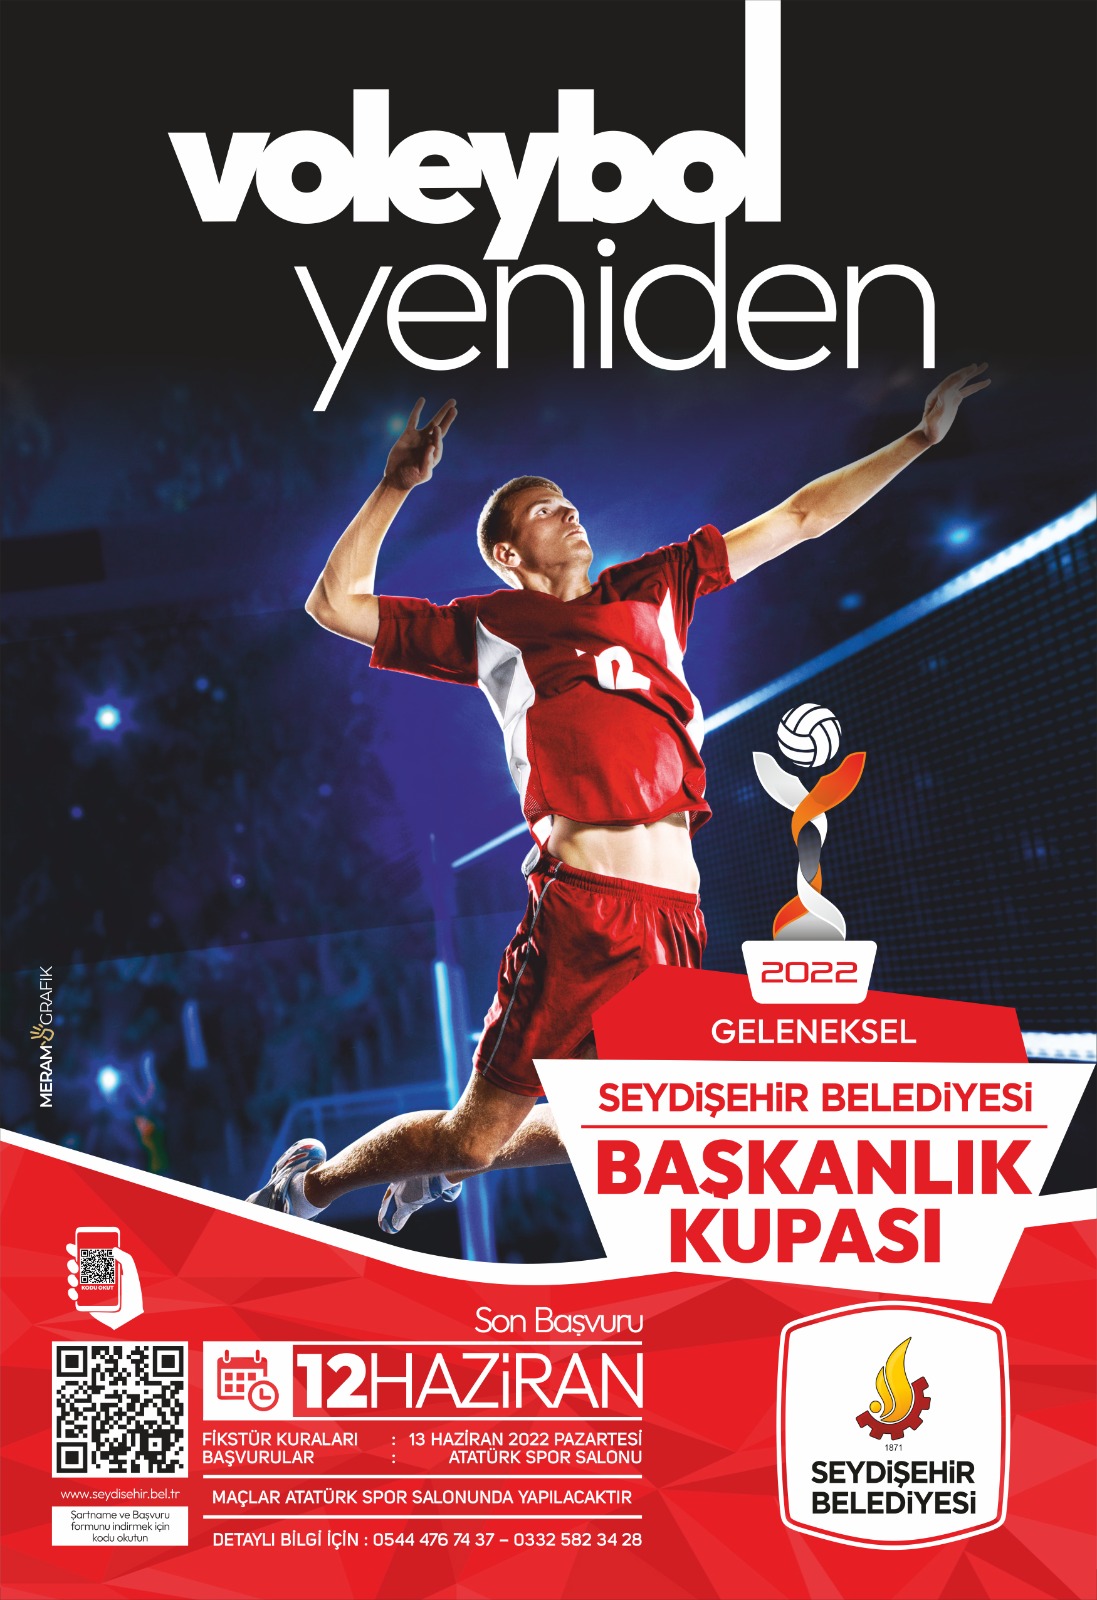 Seydişehir’de Başkanlık Kupası için başvurular başladı